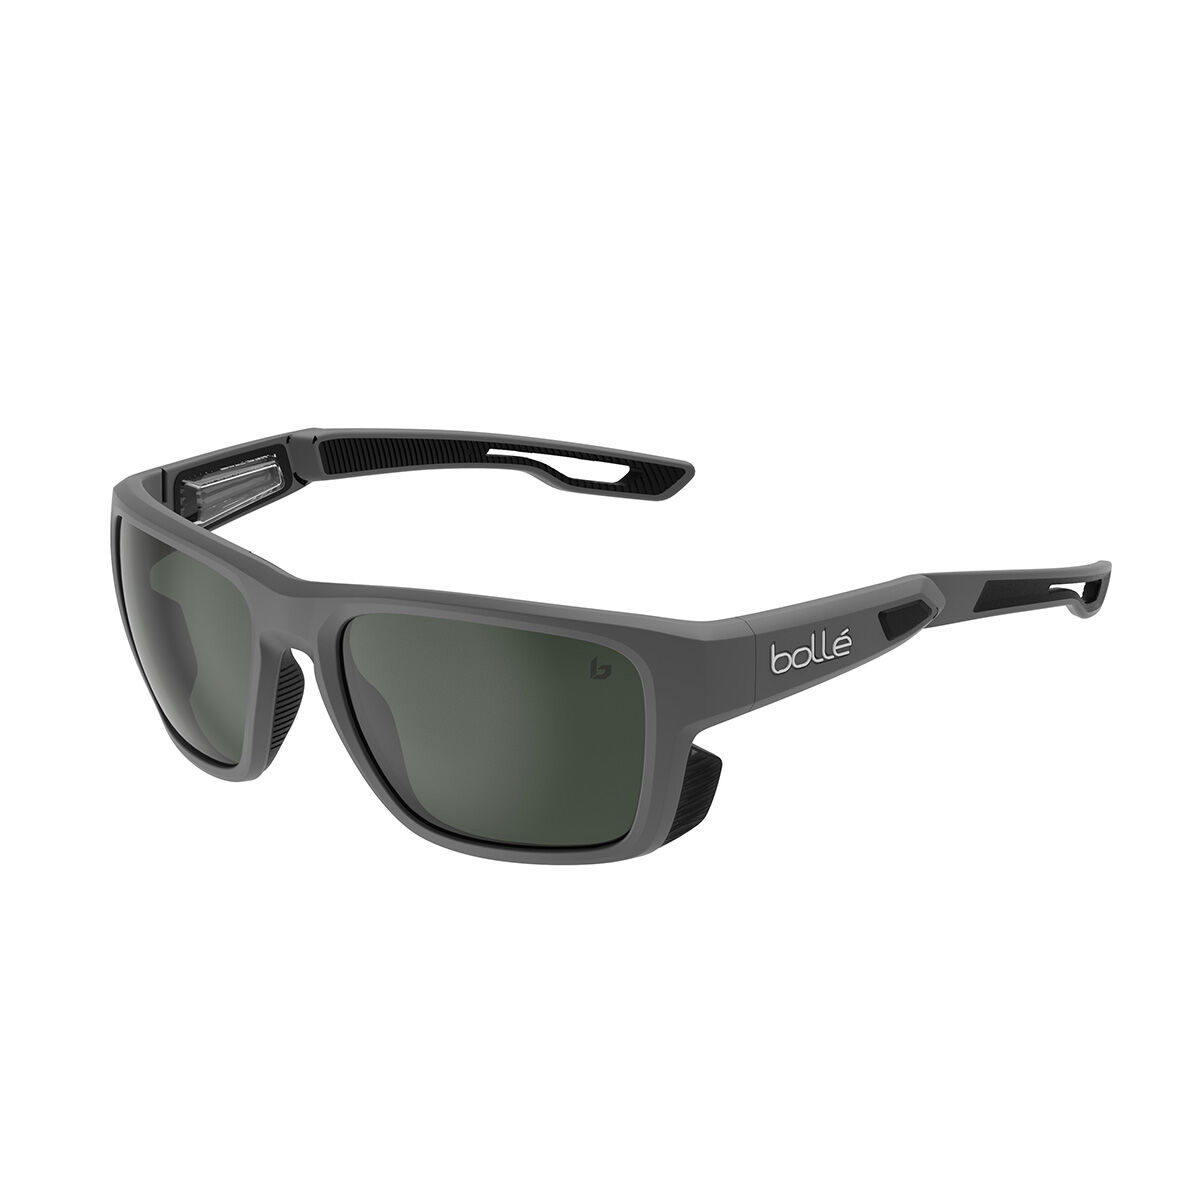 Bolle Baron 12619 Sunglasses Men's Matte Black/Red Polarized Lenses Wrap |  EyeSpecs.com